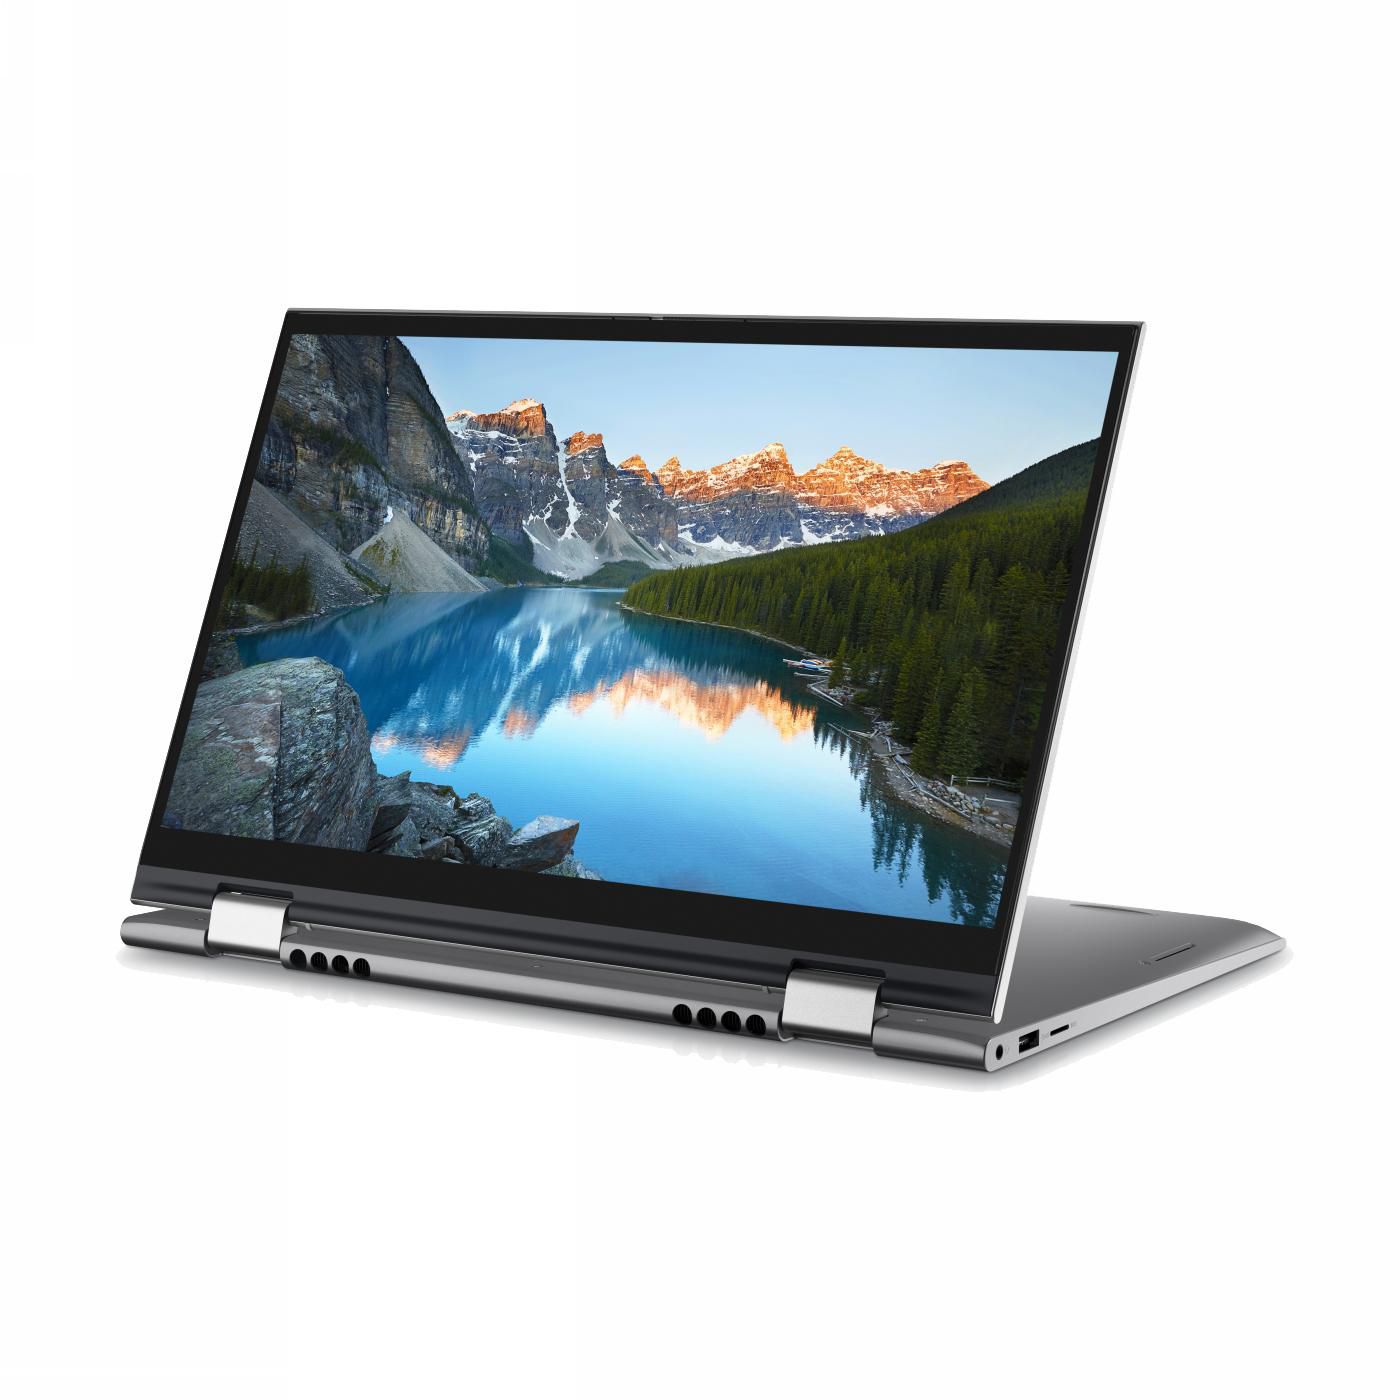 Dell Inspiron 14 5410 2-in-1 Laptop 14” FHD (1920×1080), Intel Core i7-1195G7, Nvidia MX350 2GB GPU, 16GB RAM, 512GB NVMe SSD, English/Arabic Backlit Keyboard, Windows 11, 1 Year Warranty